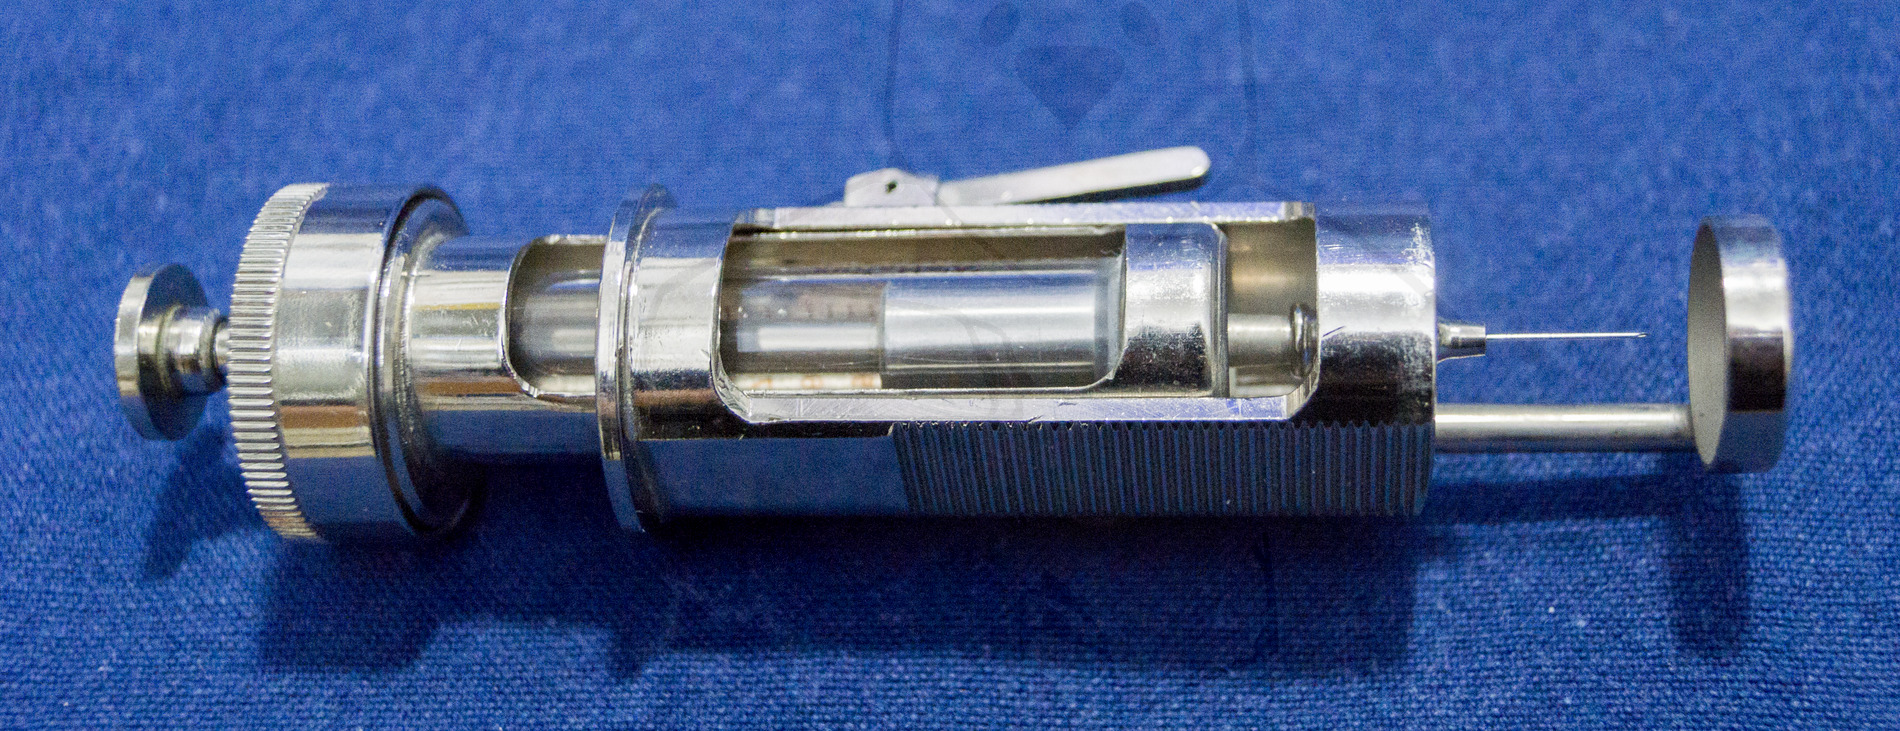 Insulininjektor "Diarapid", 1963'er Jahre, Injektor, Gespannte Feder